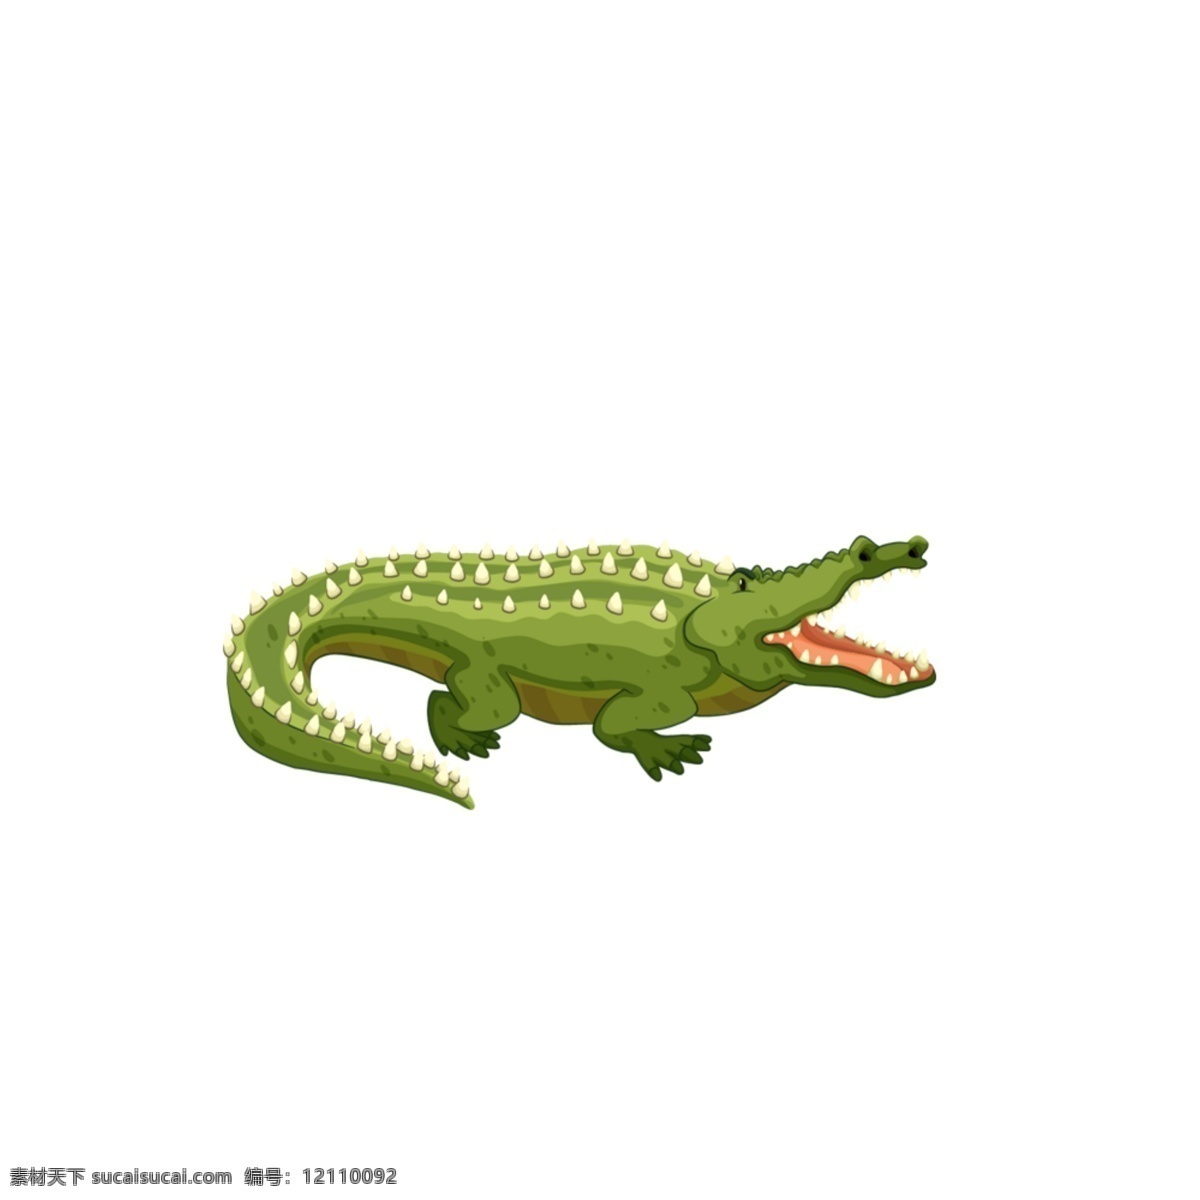 绿色小鳄鱼 绿色 小鳄鱼 卡通